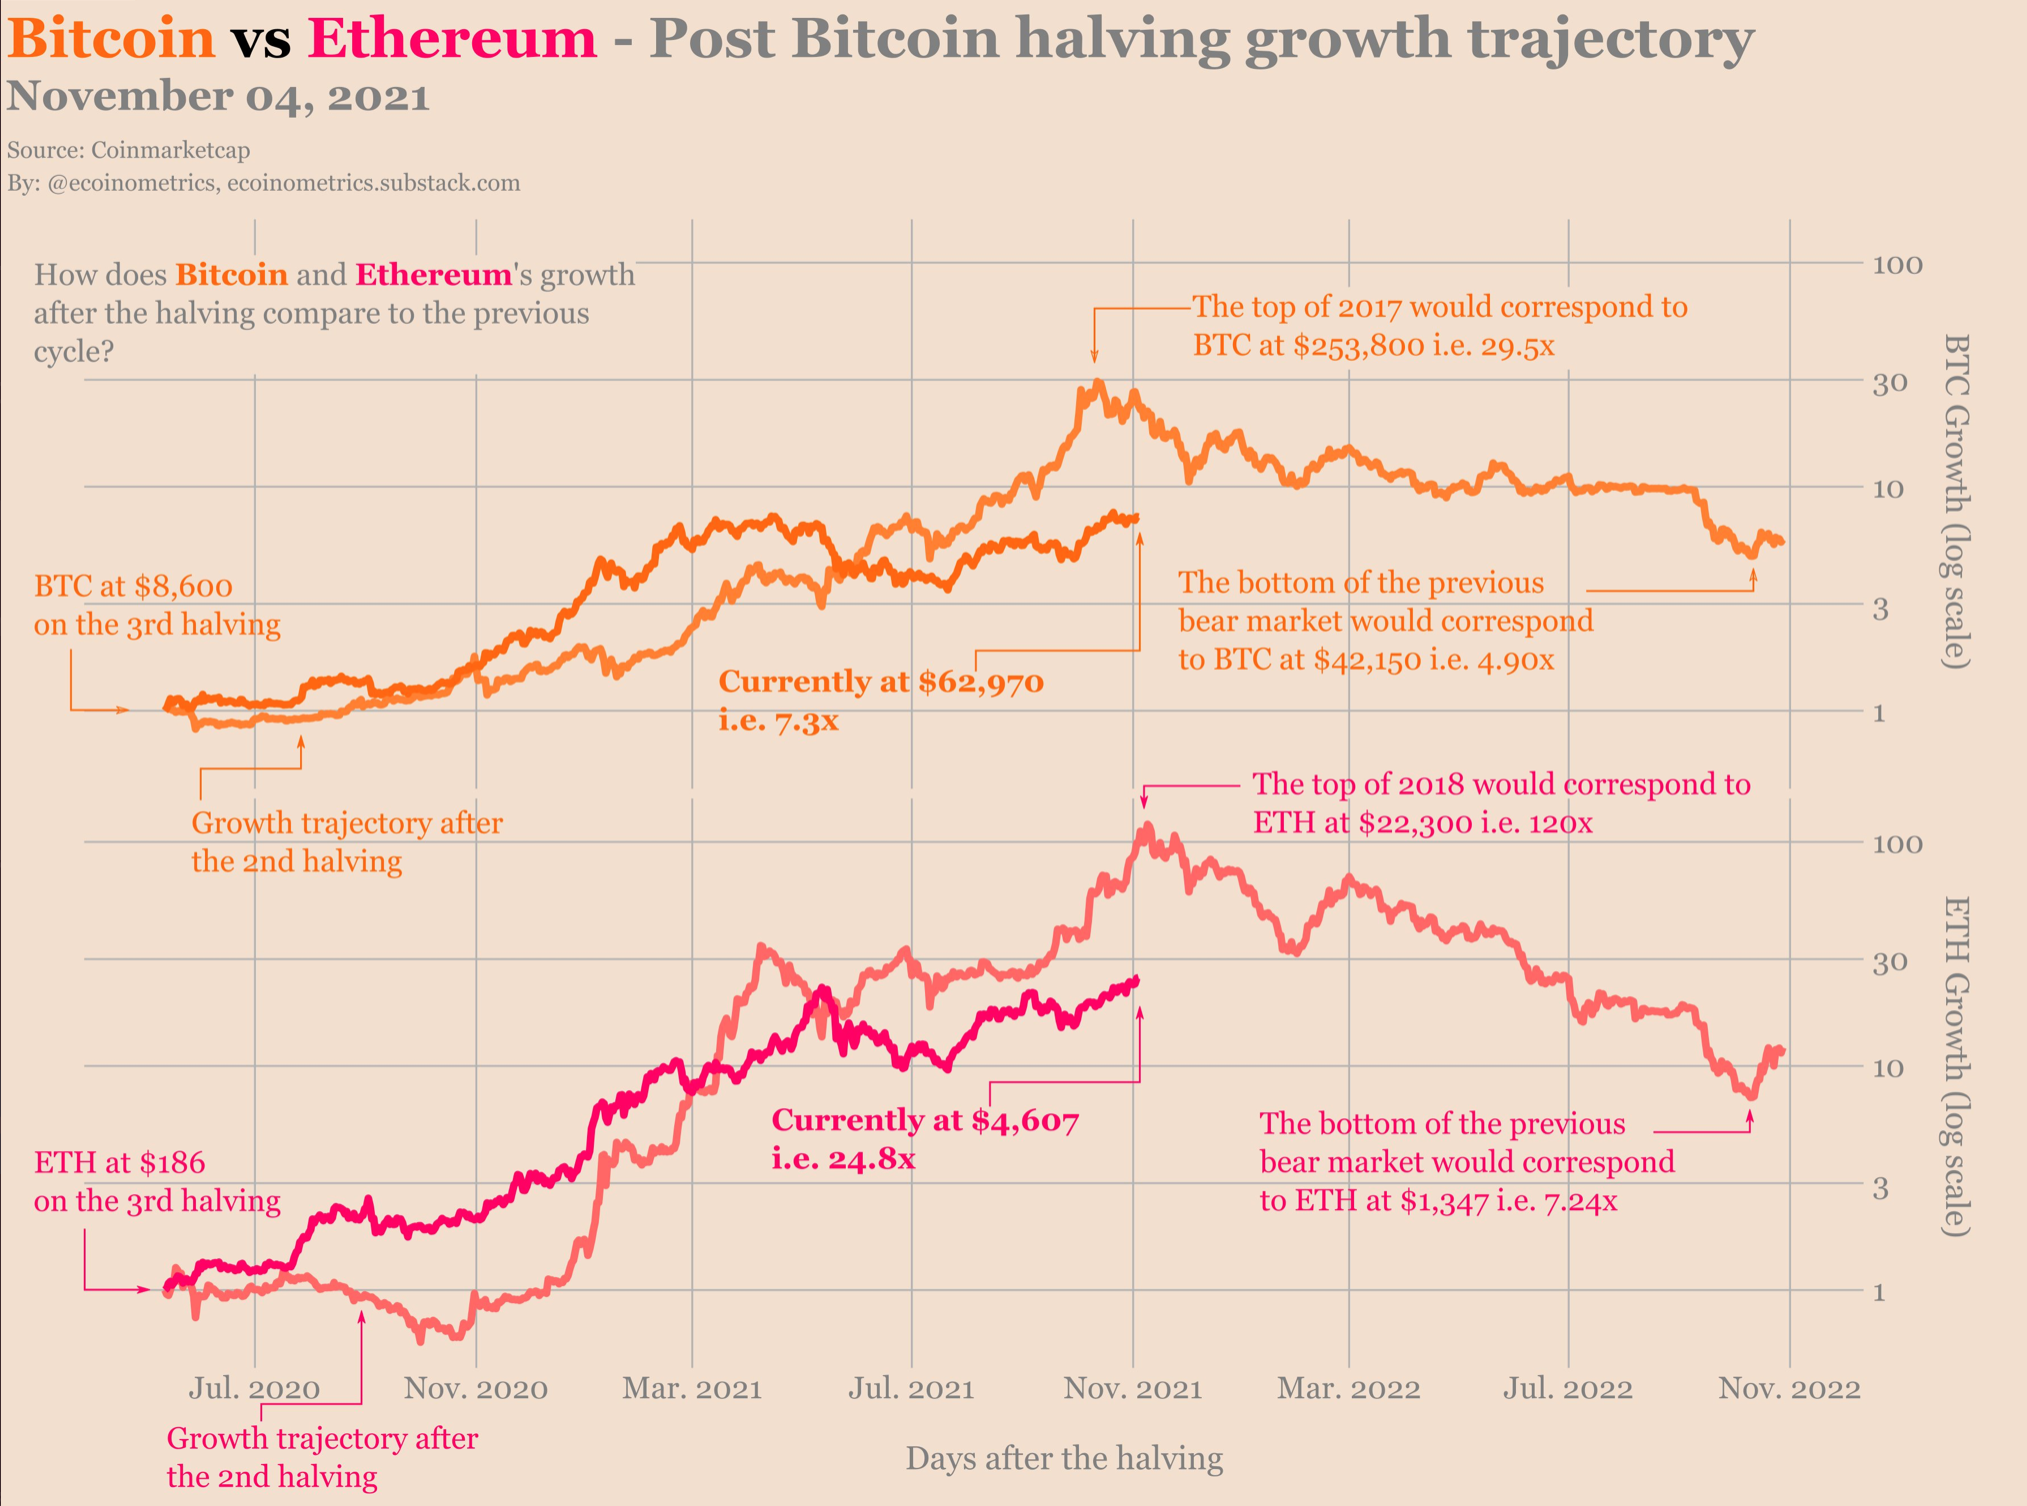 Rastreando las trayectorias de precios de Bitcoin y Ethereum en el futuro previsible